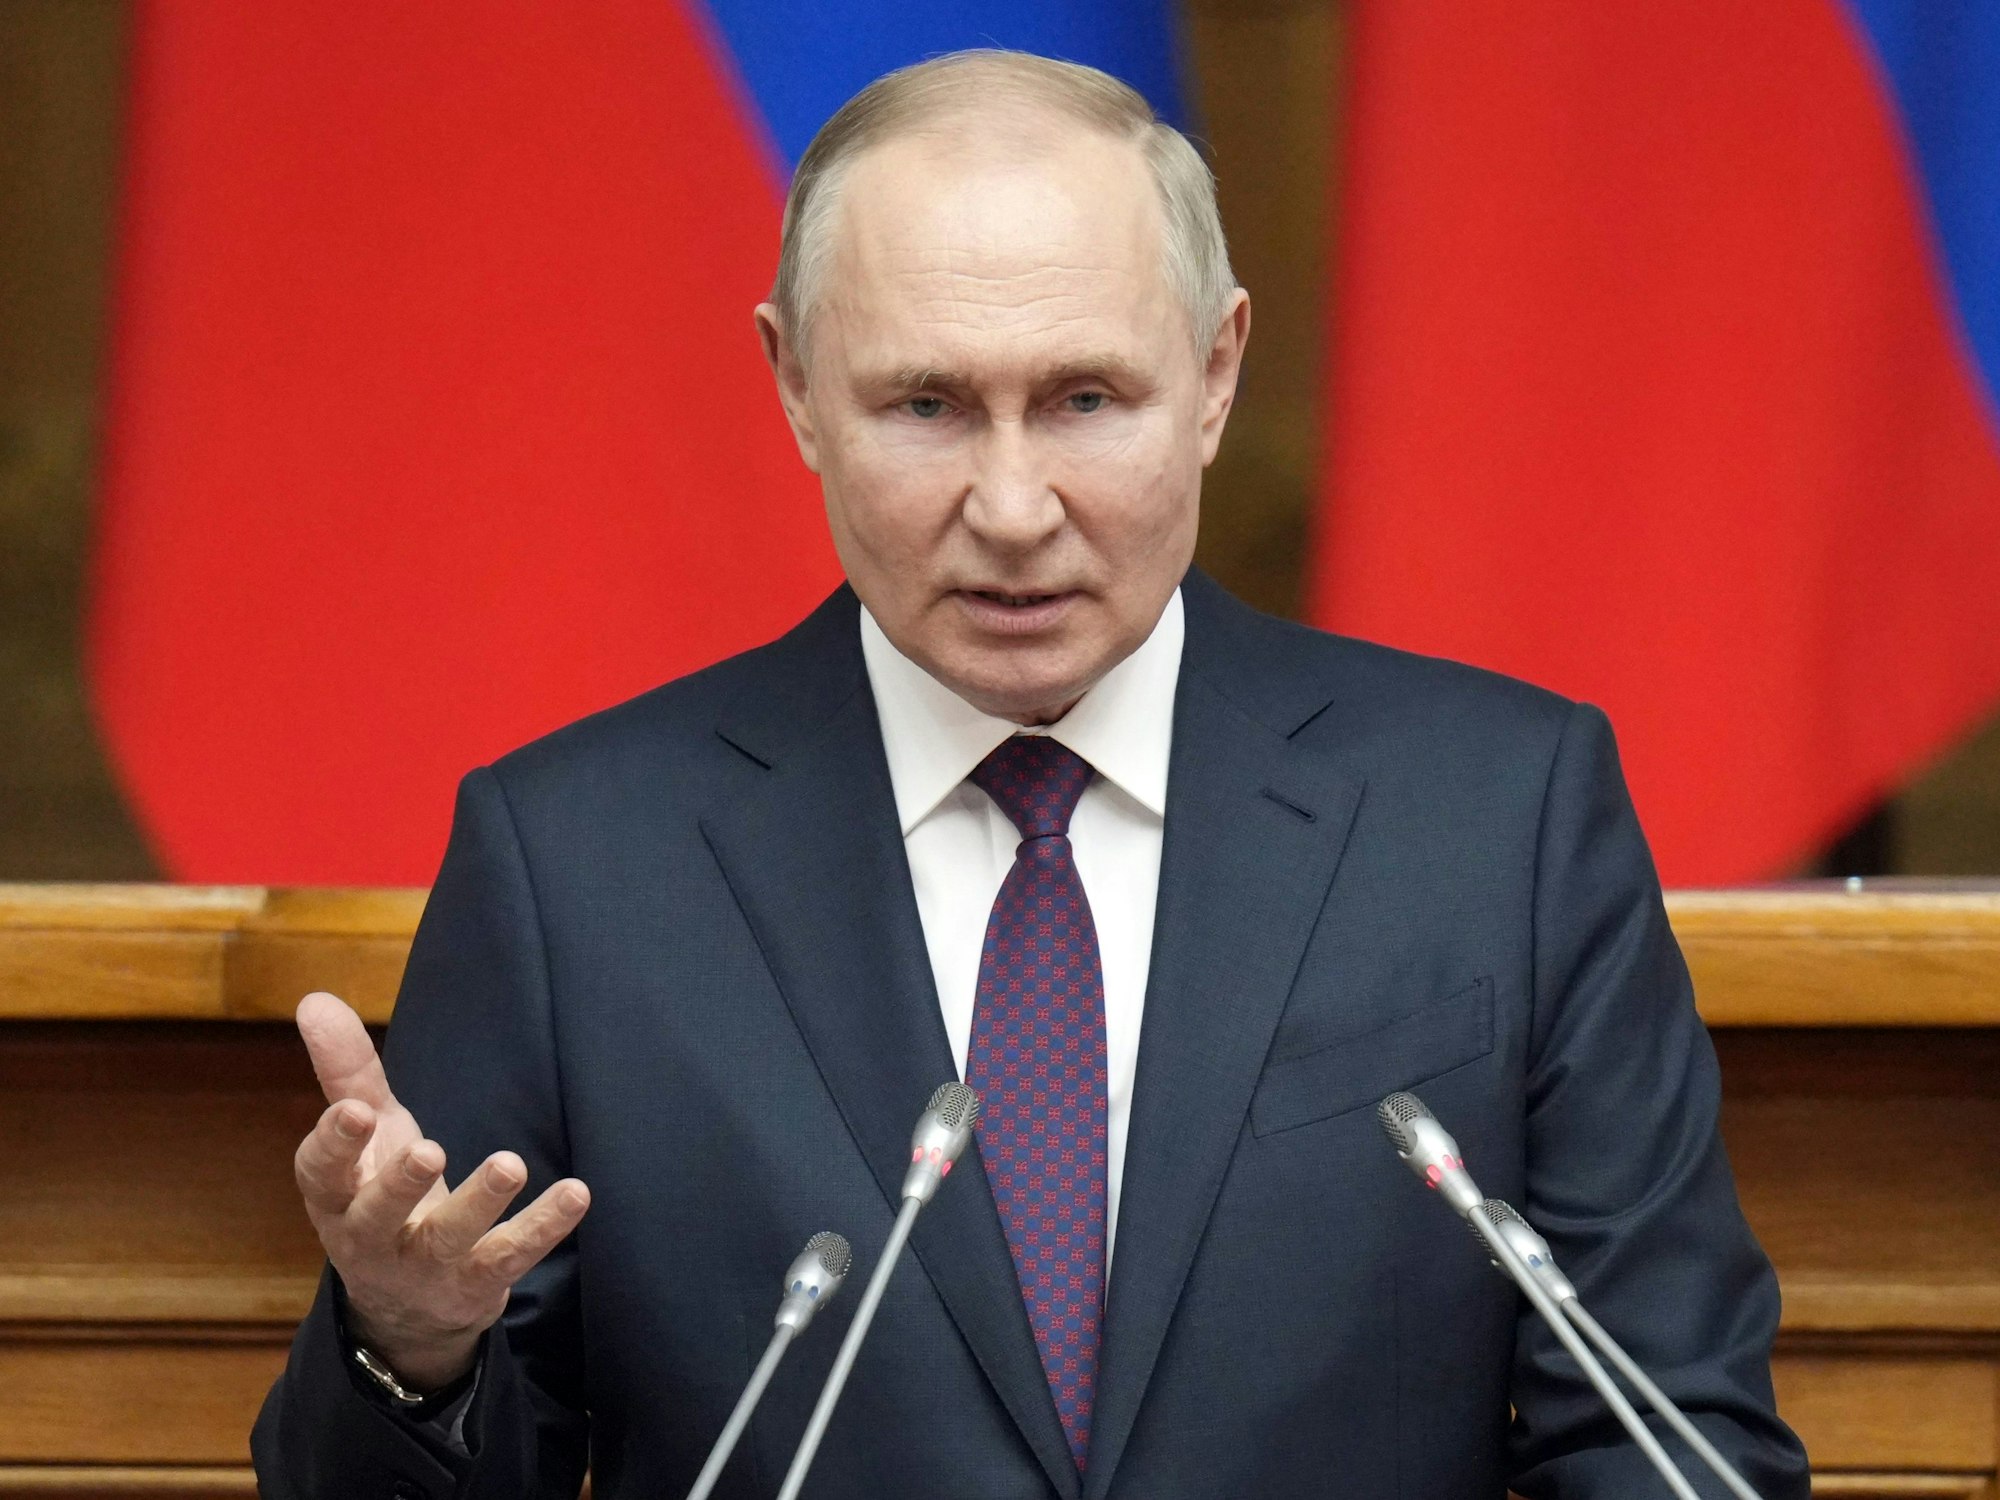 Dieses von der staatlichen russischen Nachrichtenagentur Sputnik über AP zur Verfügung gestellte Foto zeigt Wladimir Putin Ende April 2023, der eine Rede während der Sitzung des Gesetzgebungsrates der Russischen Föderalversammlung hält.